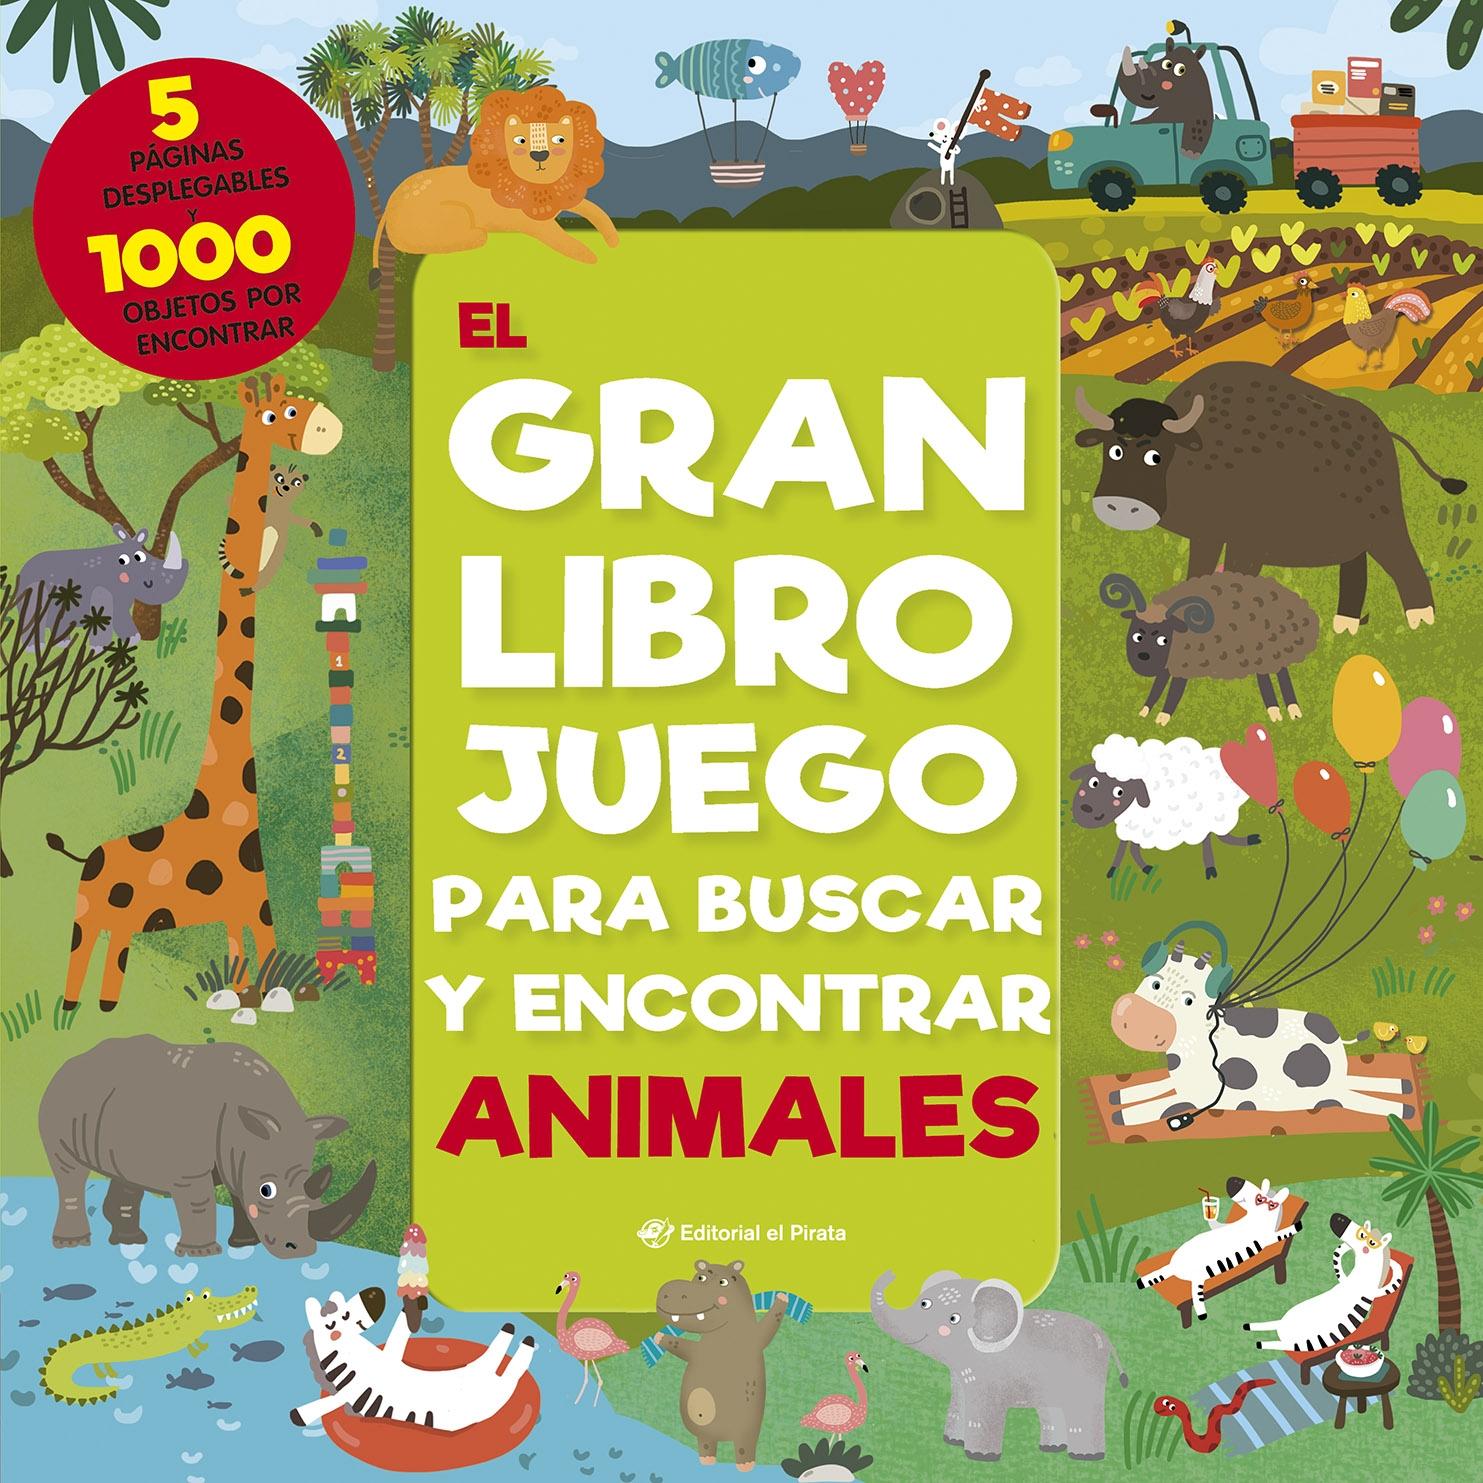 El gran libro juego para buscar y encontrar animales "1000 objetos para buscar y 5 enormes páginas desplegables"